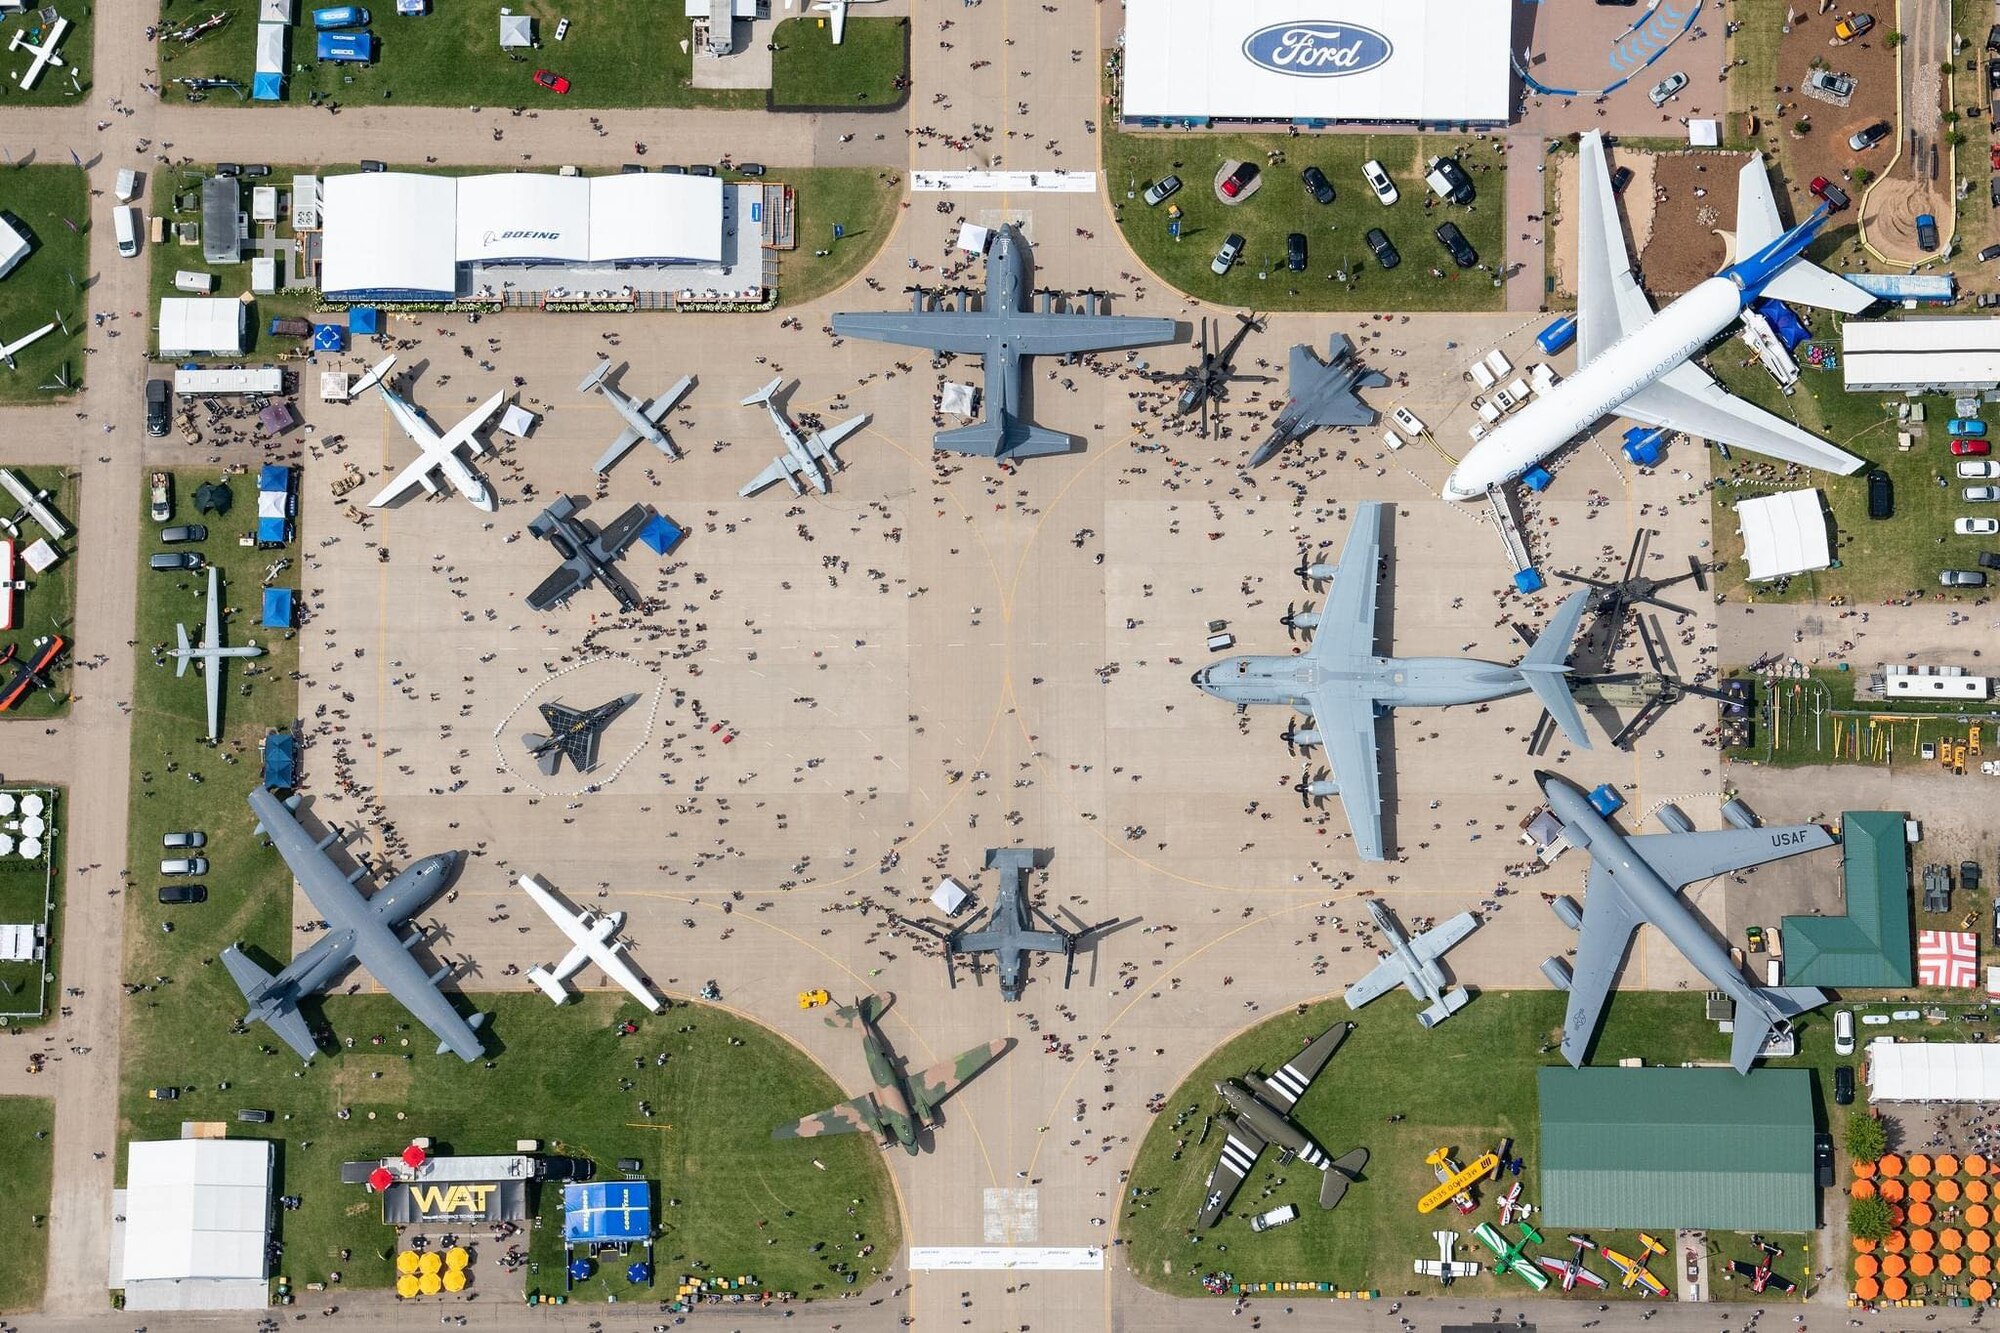 The EAA AirVenture Oshkosh 2021 airshow grounds in Oshkosh, Wisconsin, July 26, 2021.